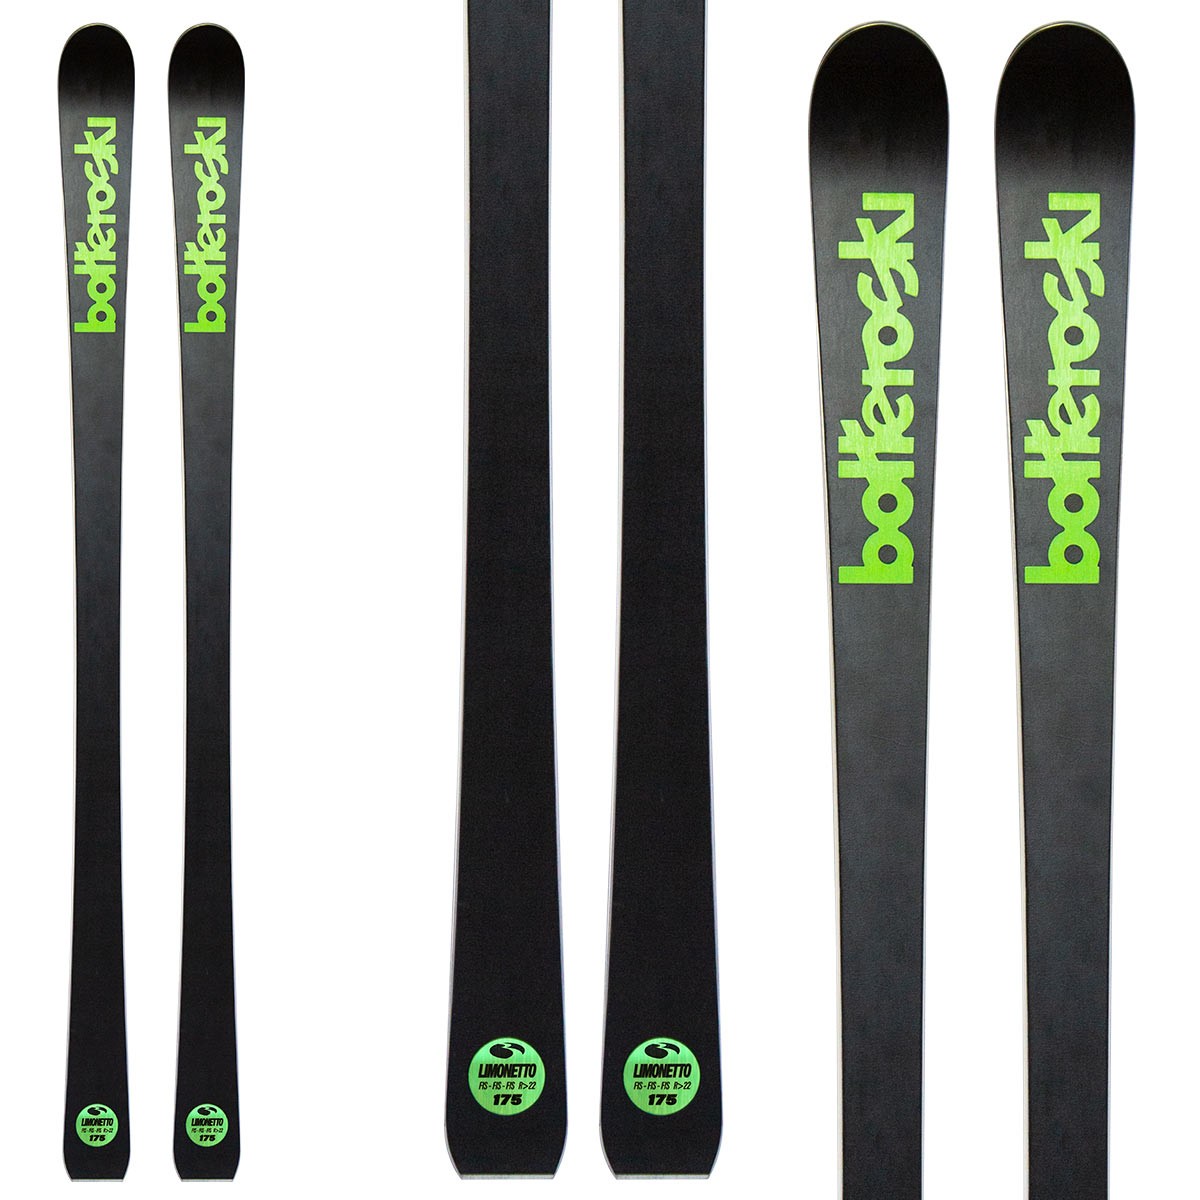  Sci Bottero Ski Limonetto con attacchi V412 con piastra WC Race Duo V10 (Colore: nero-verde, Taglia: 160) 